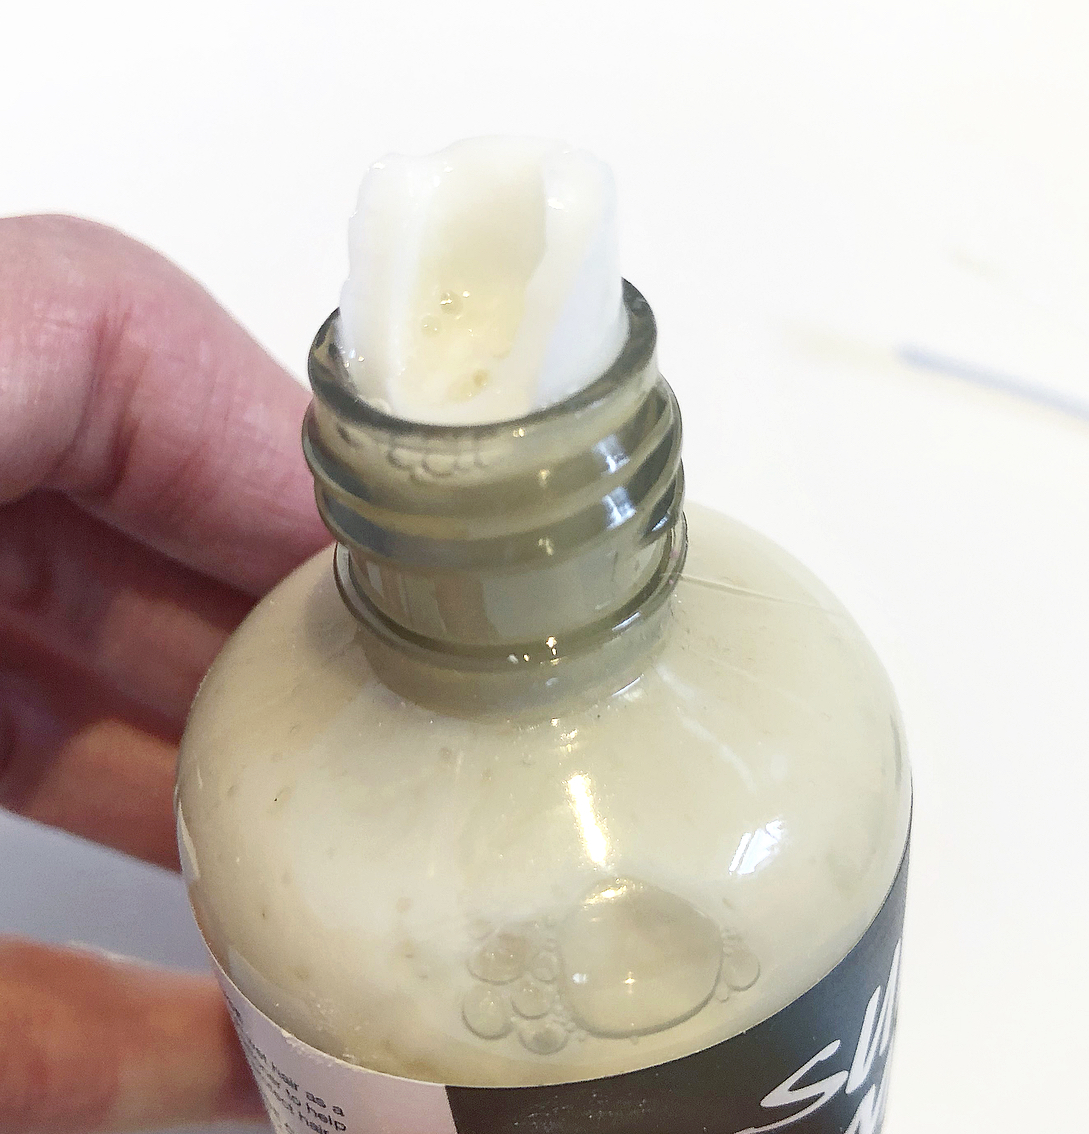 Super Milk Conditioning Hair Spray